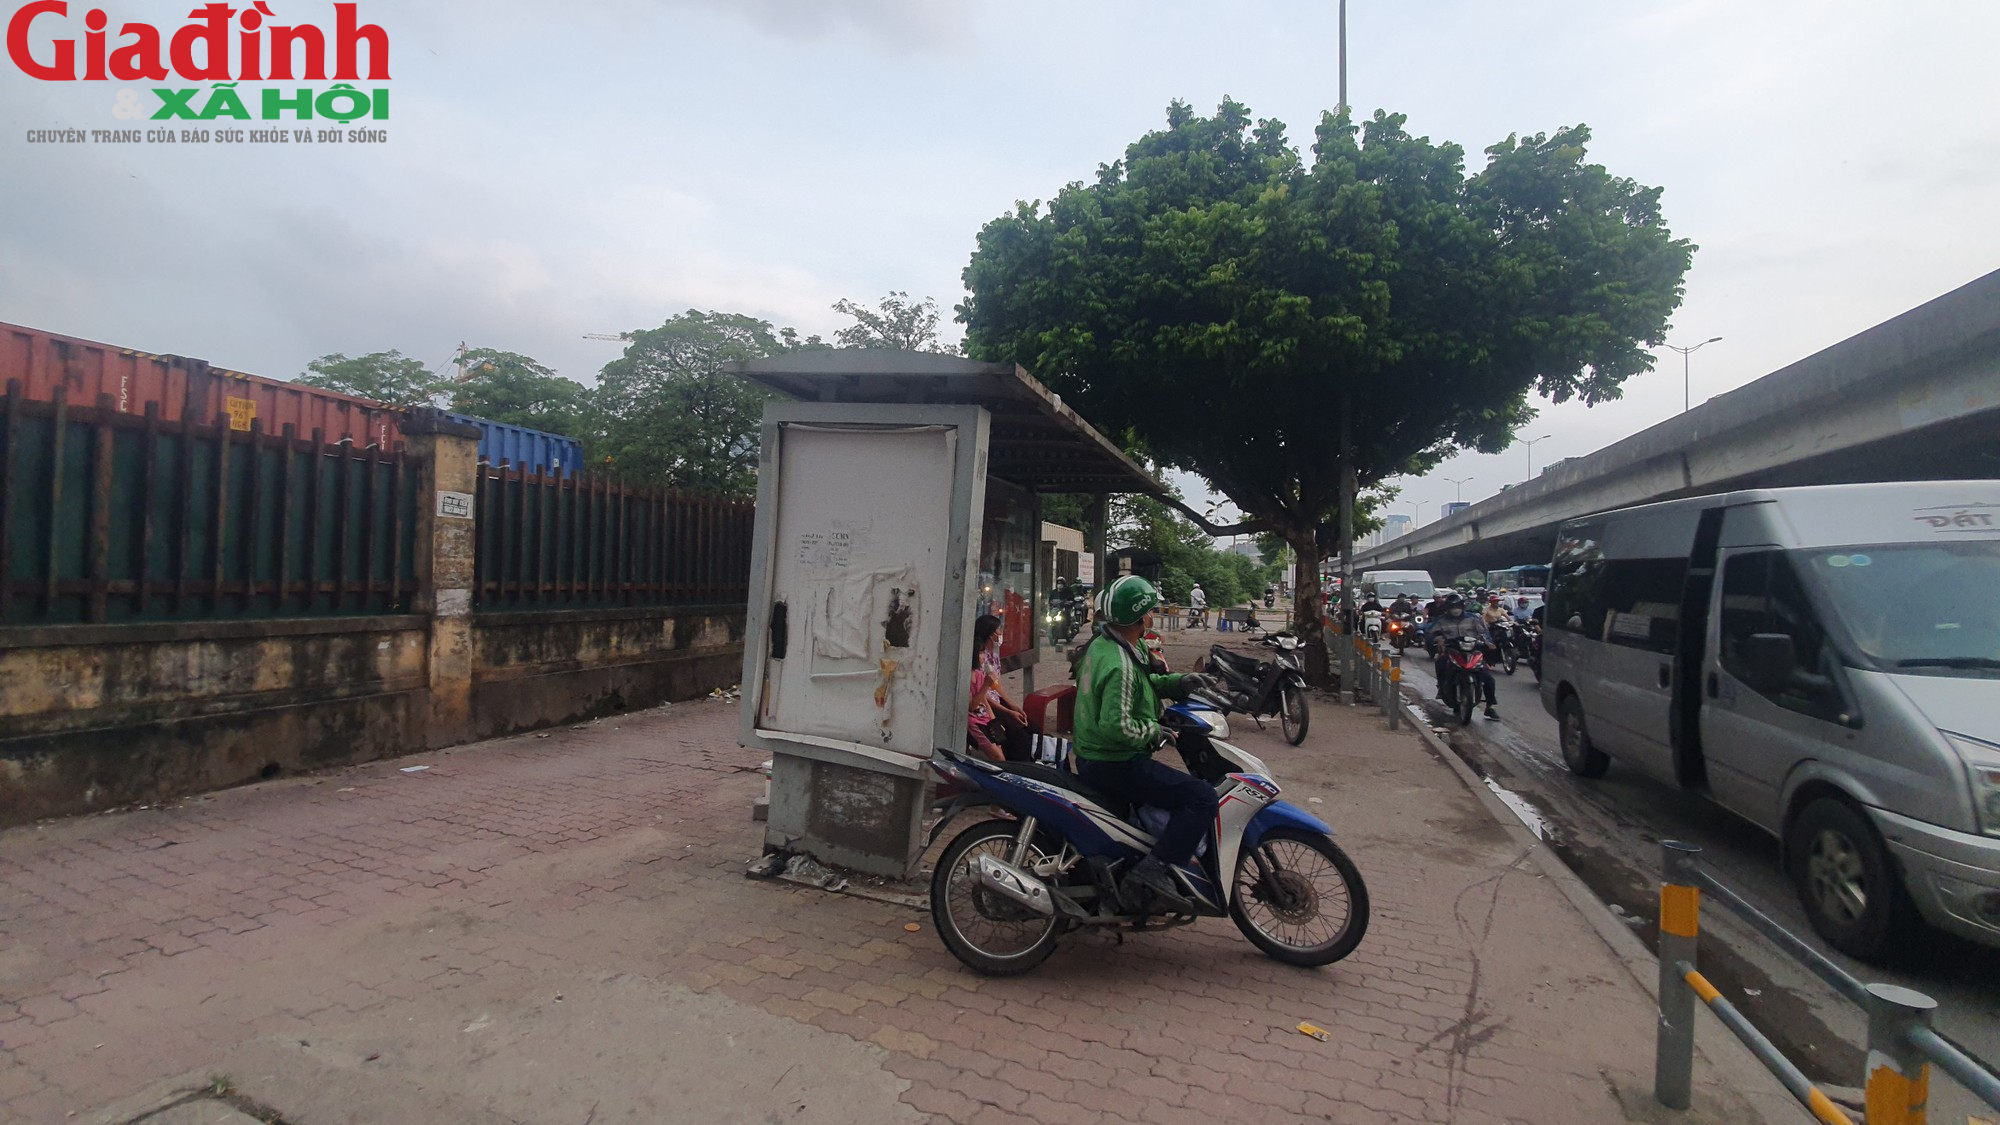 Nhiều điểm chờ xe buýt ở Hà Nội xuống cấp, có nơi đặt ngay cạnh bot điện cao thế - Ảnh 3.